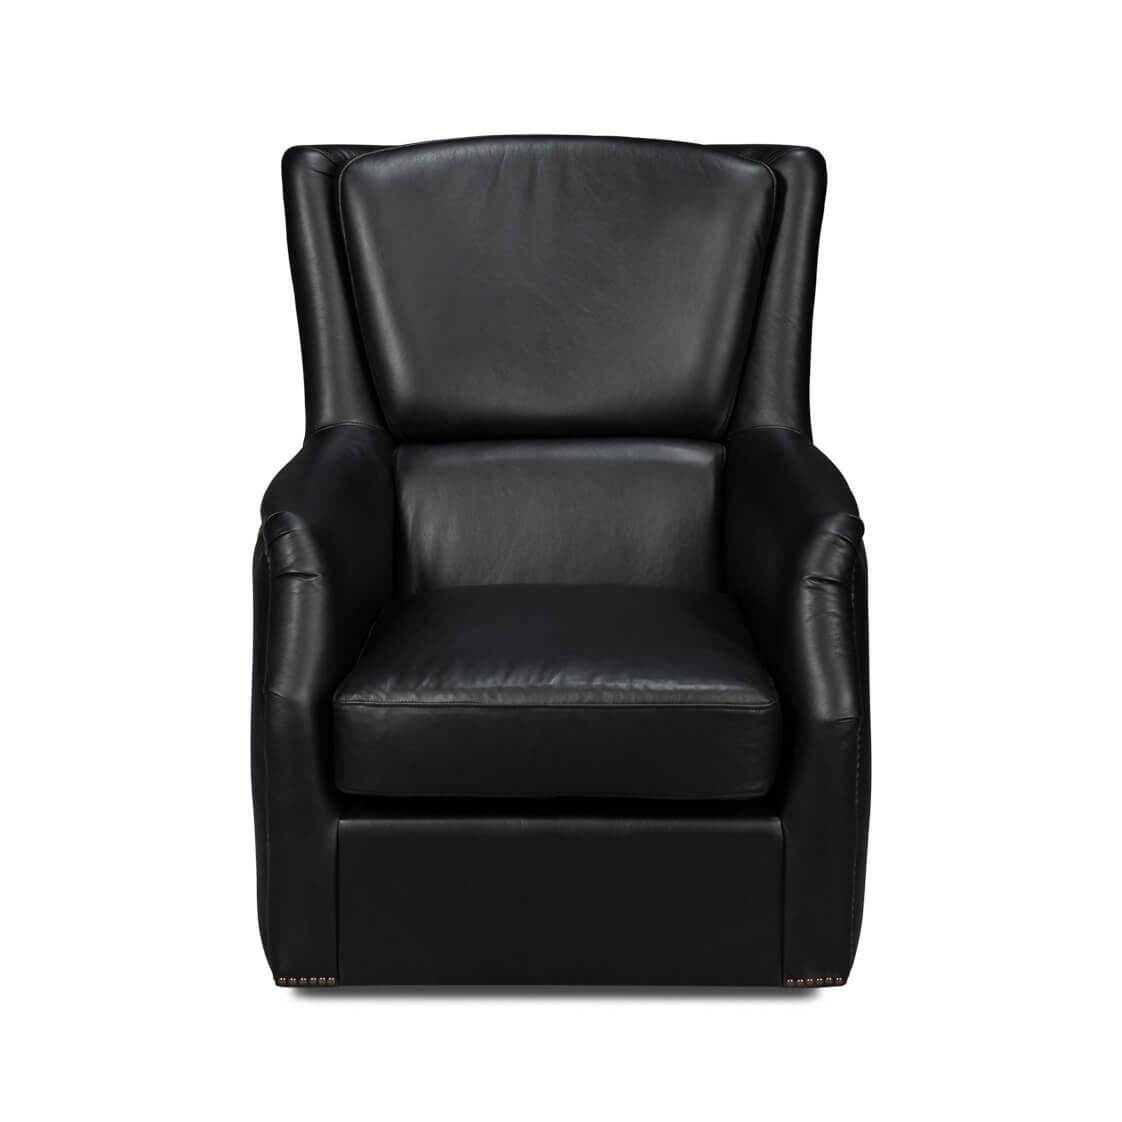 
Dieser klassische Sessel ist mit unserem klassischen Onyx Black-Leder bezogen und mit reinem Anilinleder von höchster Qualität gefertigt.

Abmessungen: 31